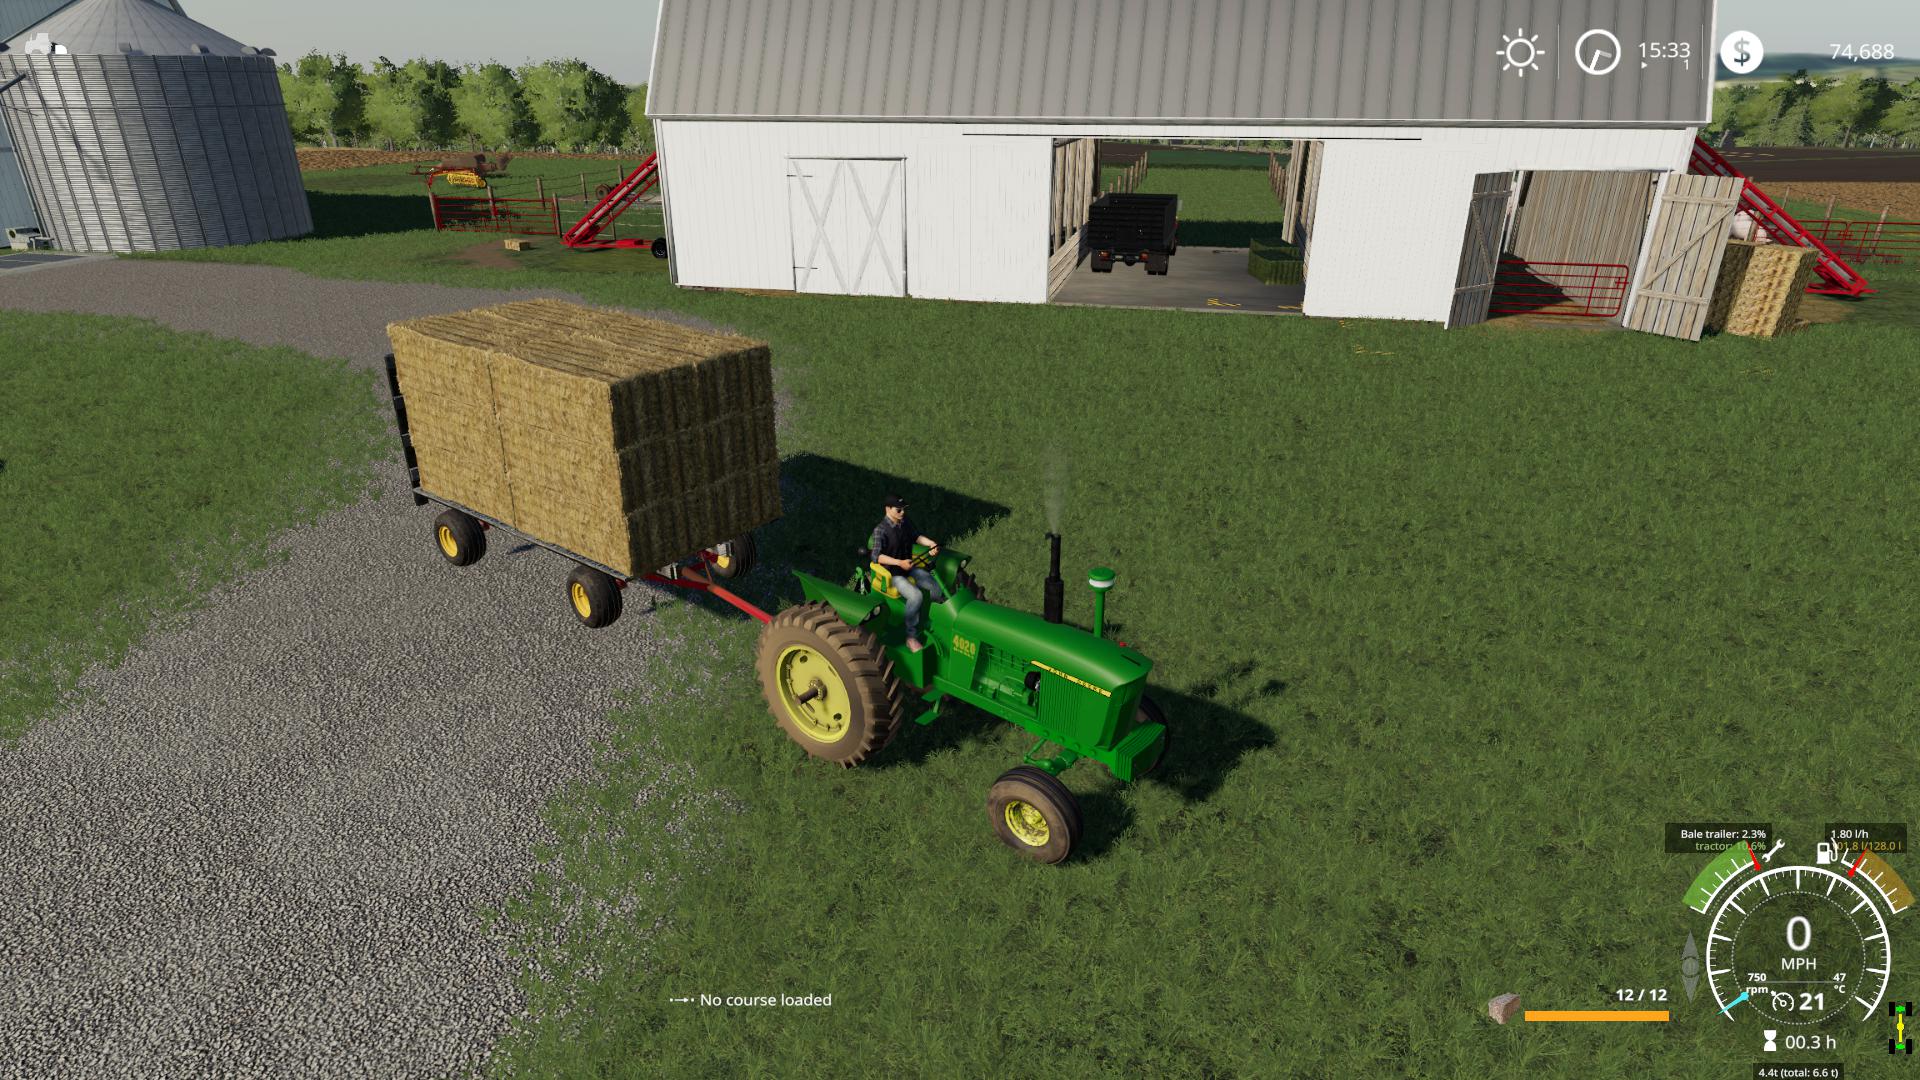 Autoload hay Wagon v1.0 FS19 Farming Simulator 19 Mod FS19 mod.